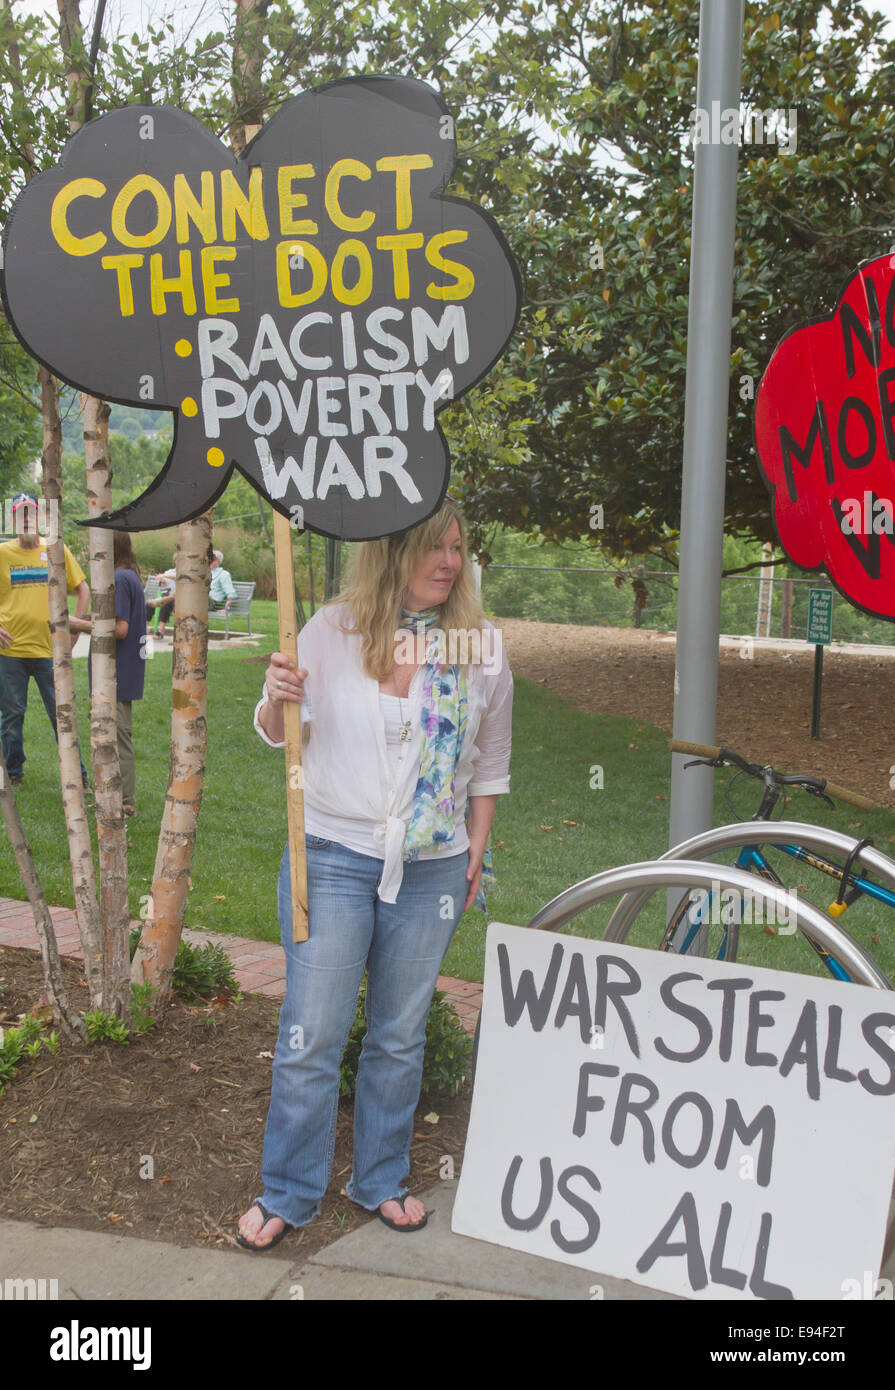 Asheville, North Carolina, Stati Uniti d'America - 4 agosto 2014: morale lunedì protester con segno che collega il razzismo, la povertà e la guerra Foto Stock